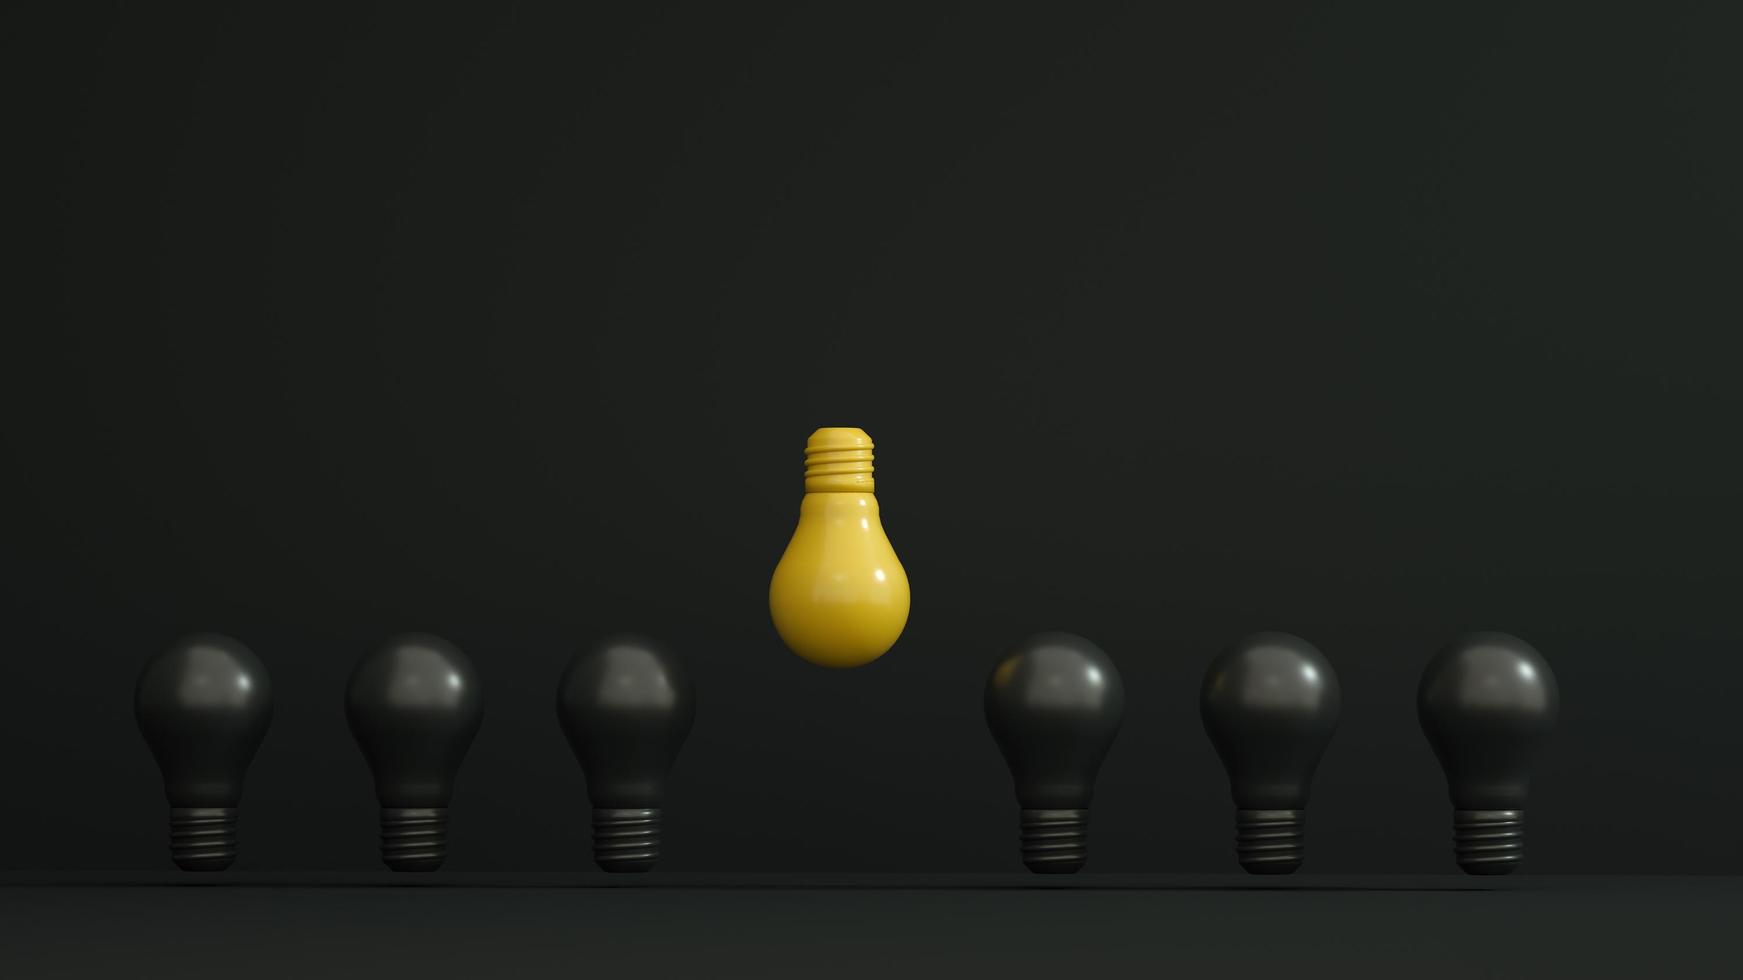 lâmpada amarela invertida e mais alta entre as lâmpadas pretas em fundo escuro. liderança, inovação, autoridade, grande ideia e conceitos de individualidade. foto